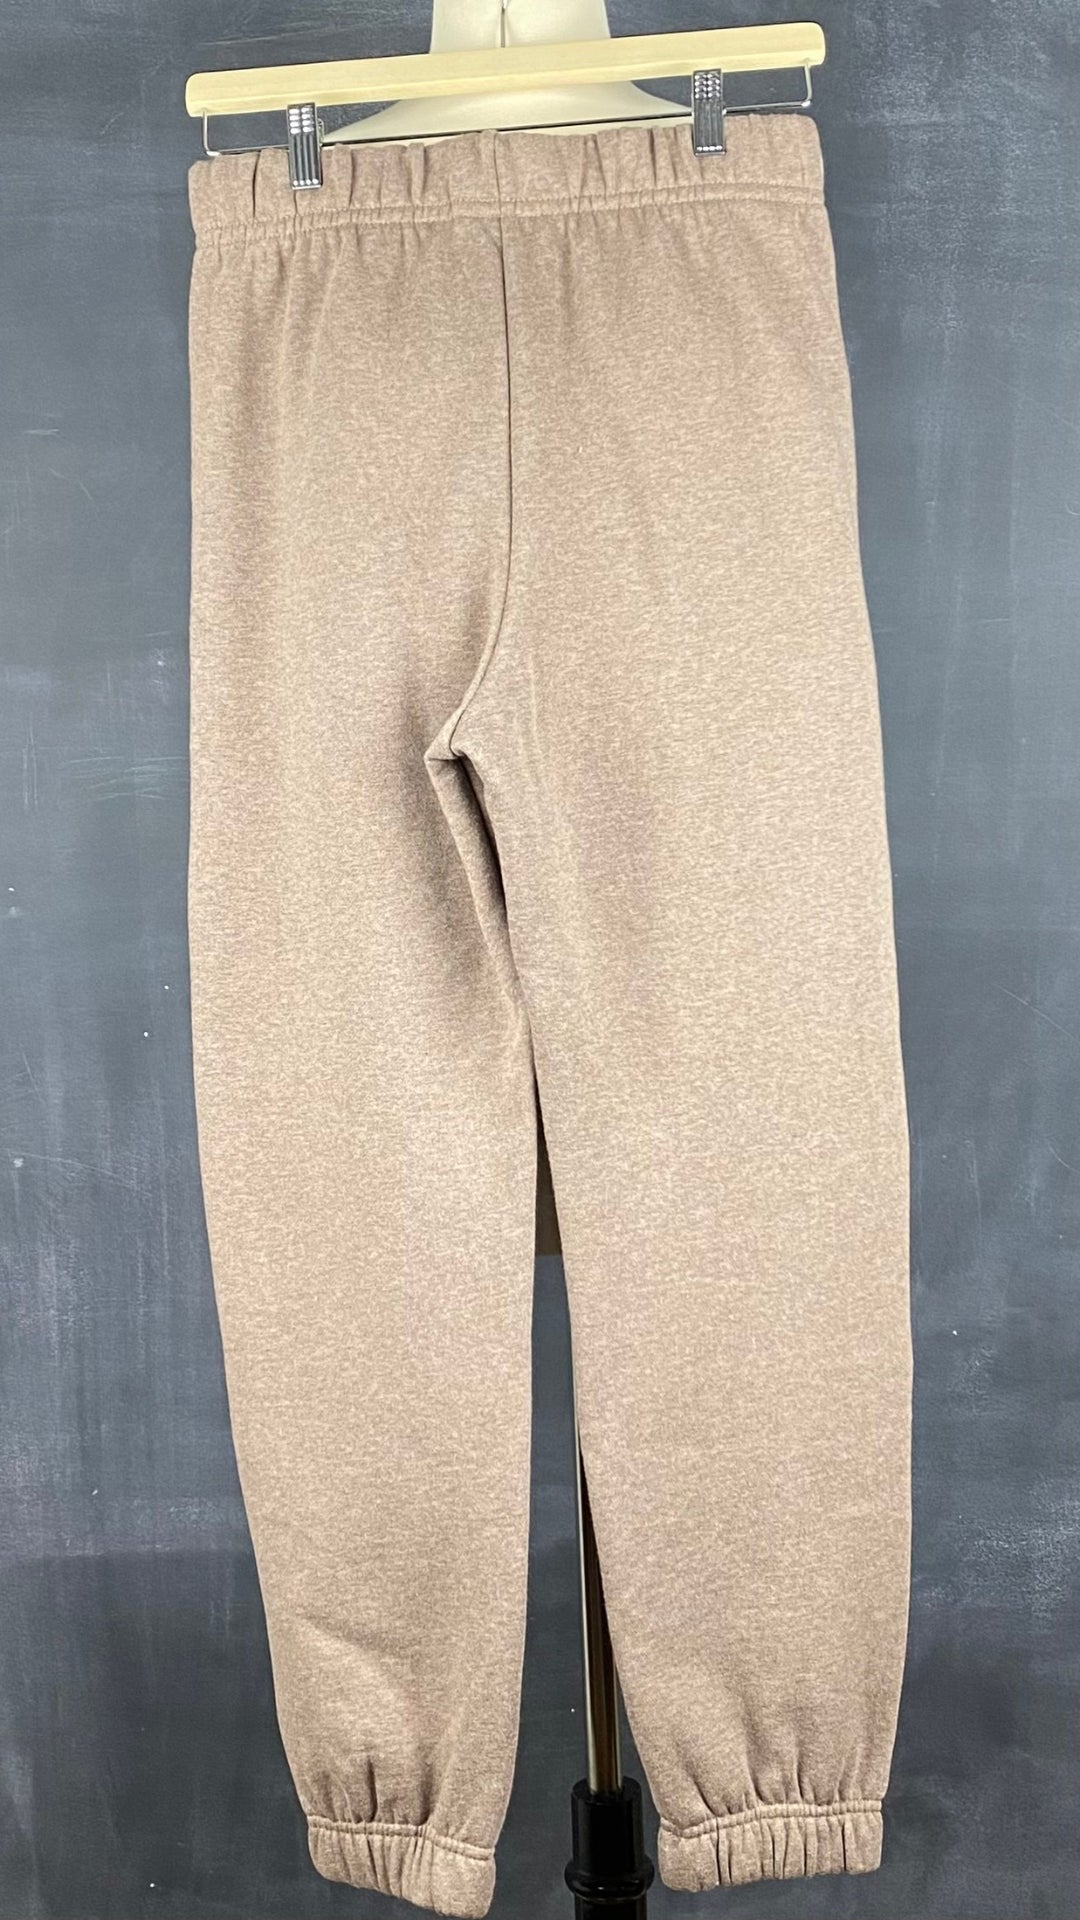 Pantalon jogger ouaté confort suprême Seve & Co. disponibles en plusieurs tailles. Vue de dos.